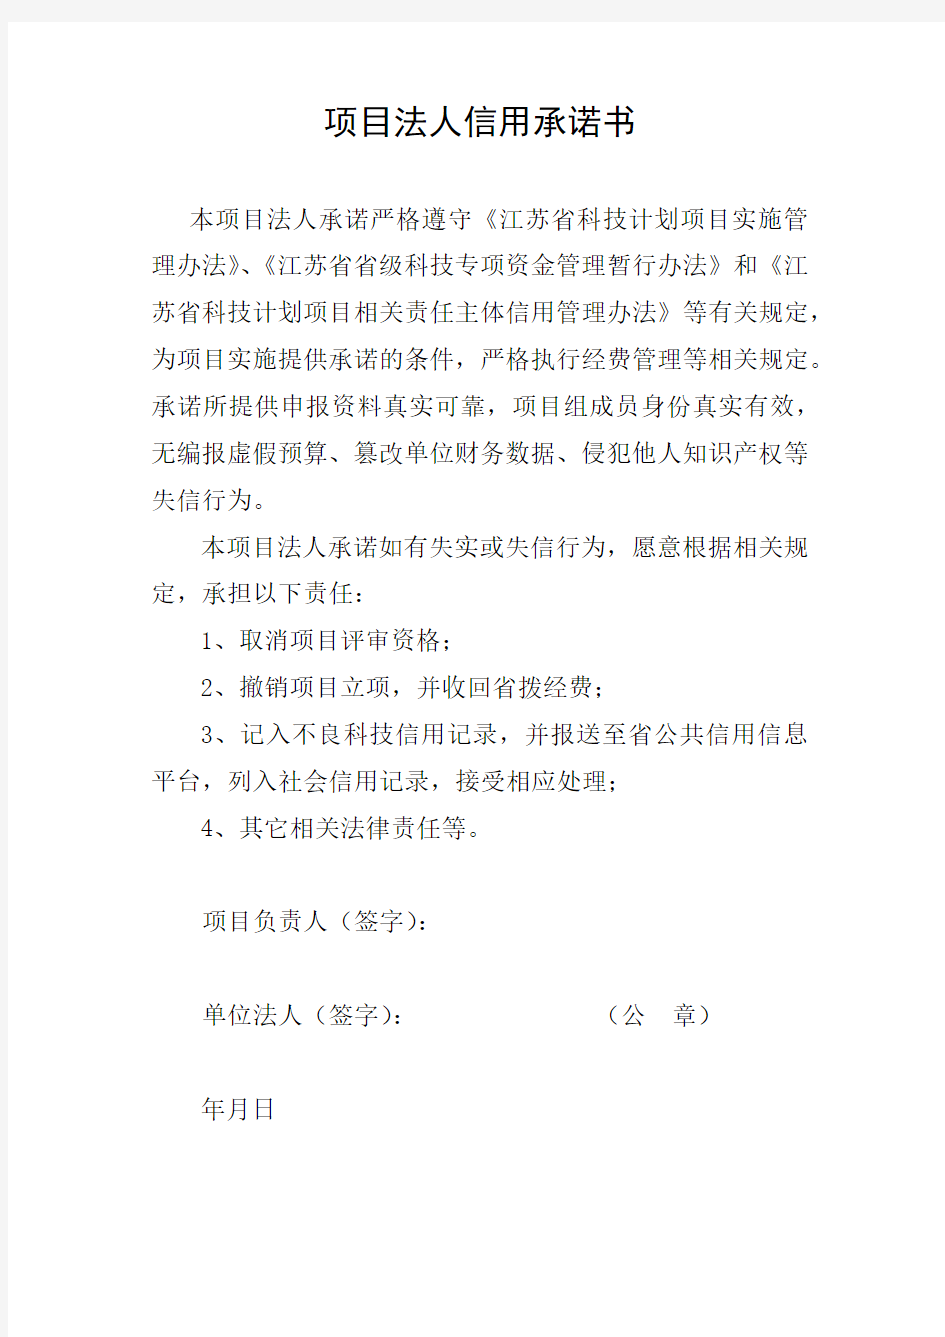 江苏省科技计划项目申报书(2016年版)